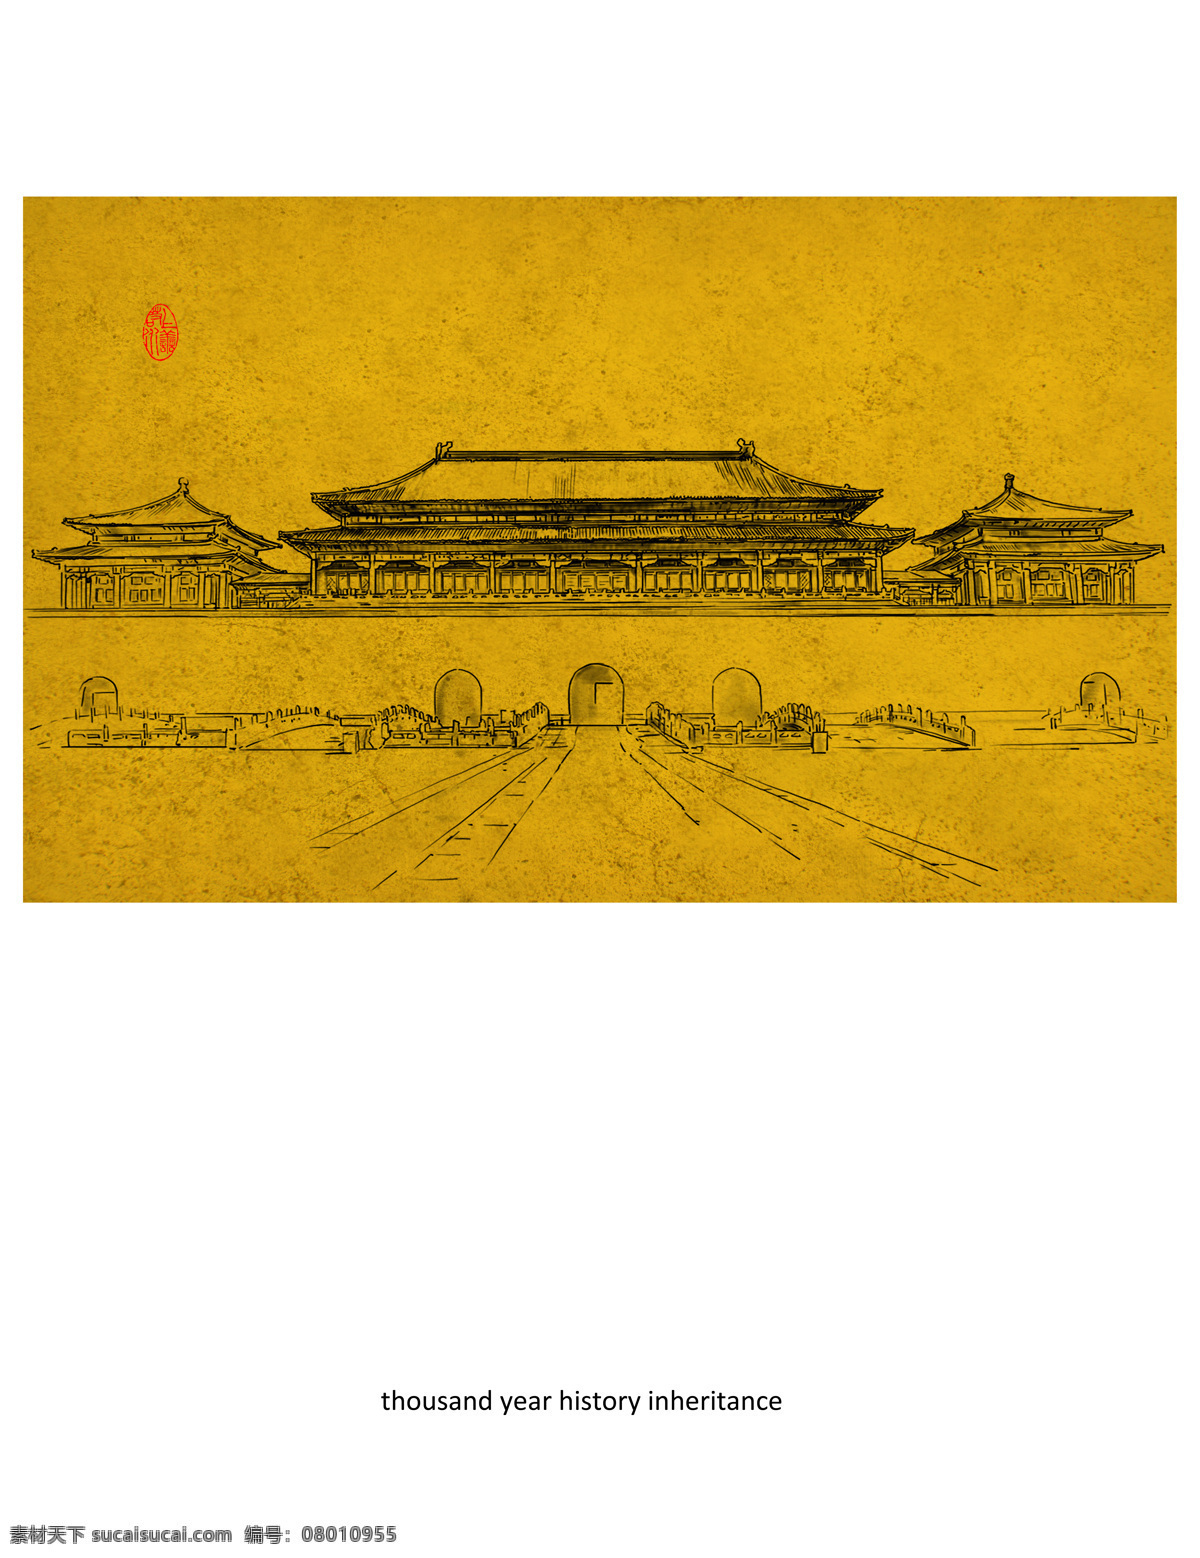 中式建筑图案 金色 背景 白描 水墨 建筑 古典建筑 黑白 金色背景 装饰画